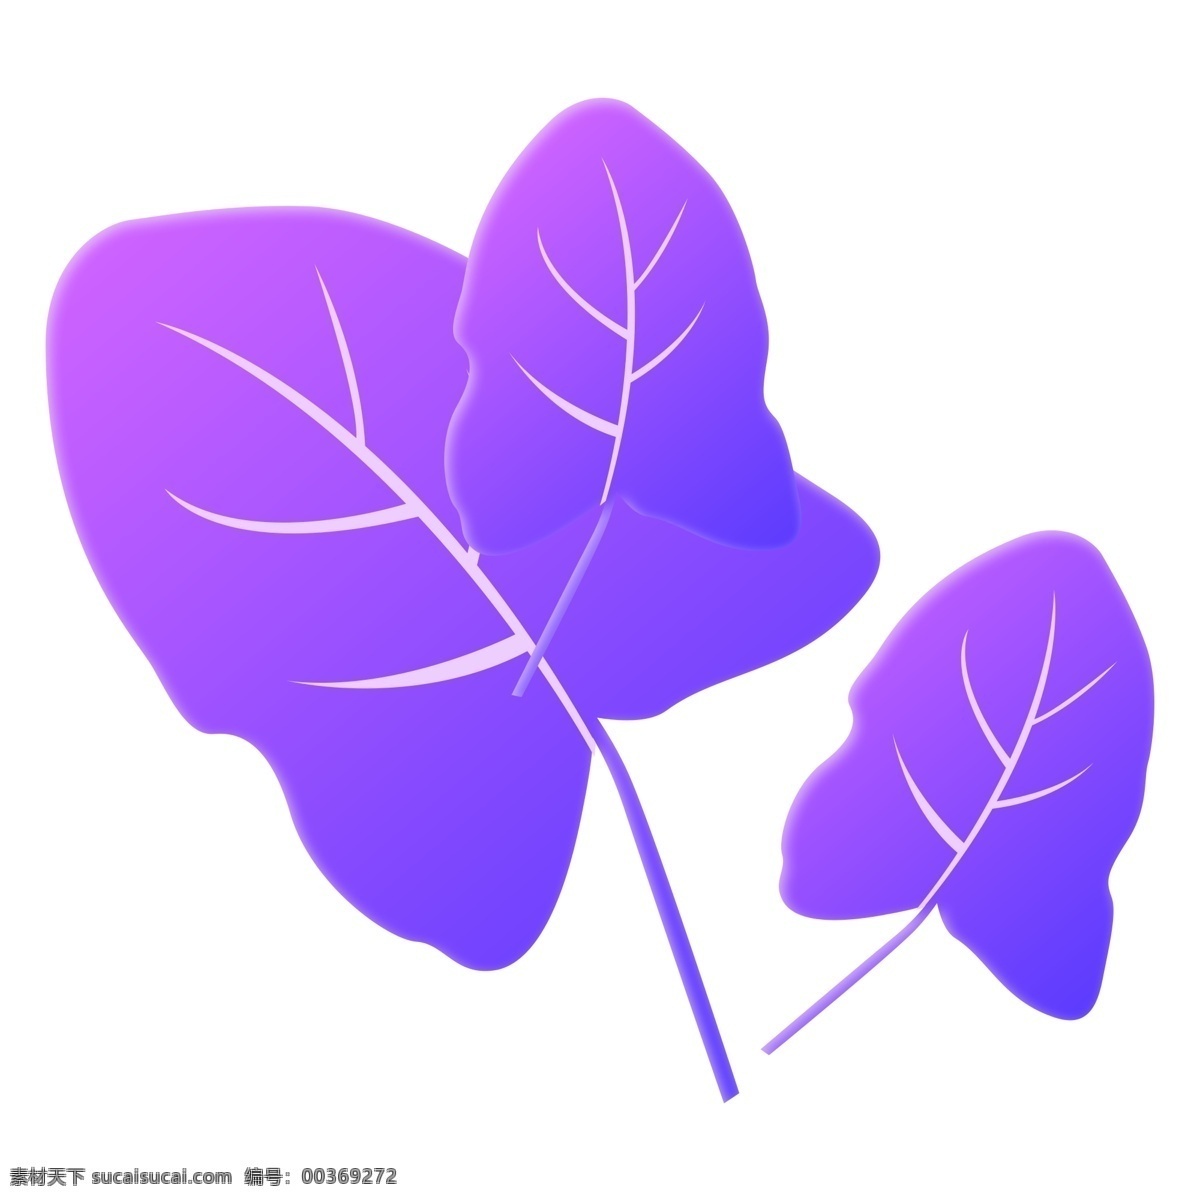 紫色 树叶 卡通 装饰 免 抠 图 叶子 插画 免抠图 紫色树叶